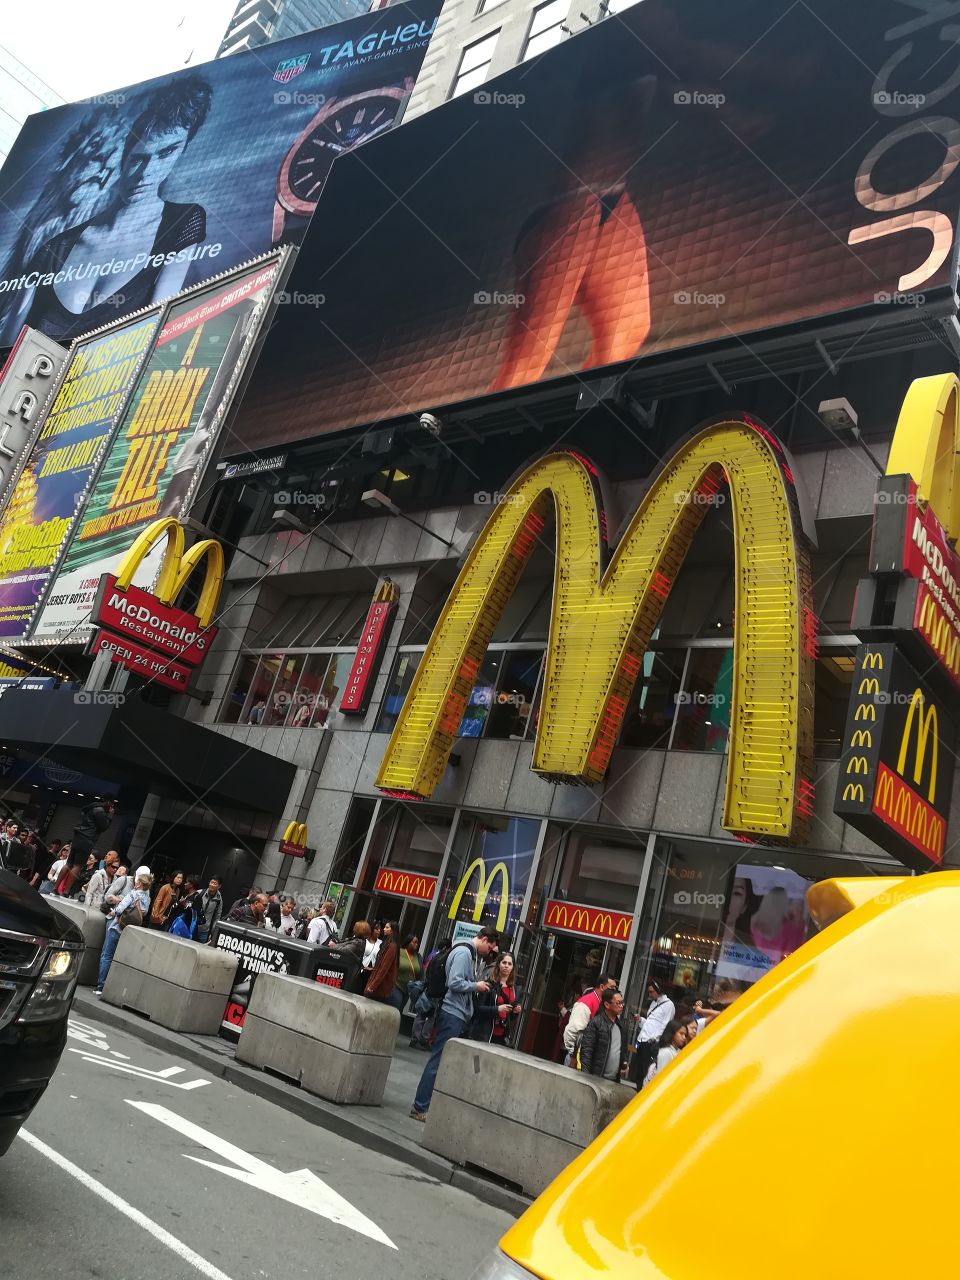 Big Mac NY